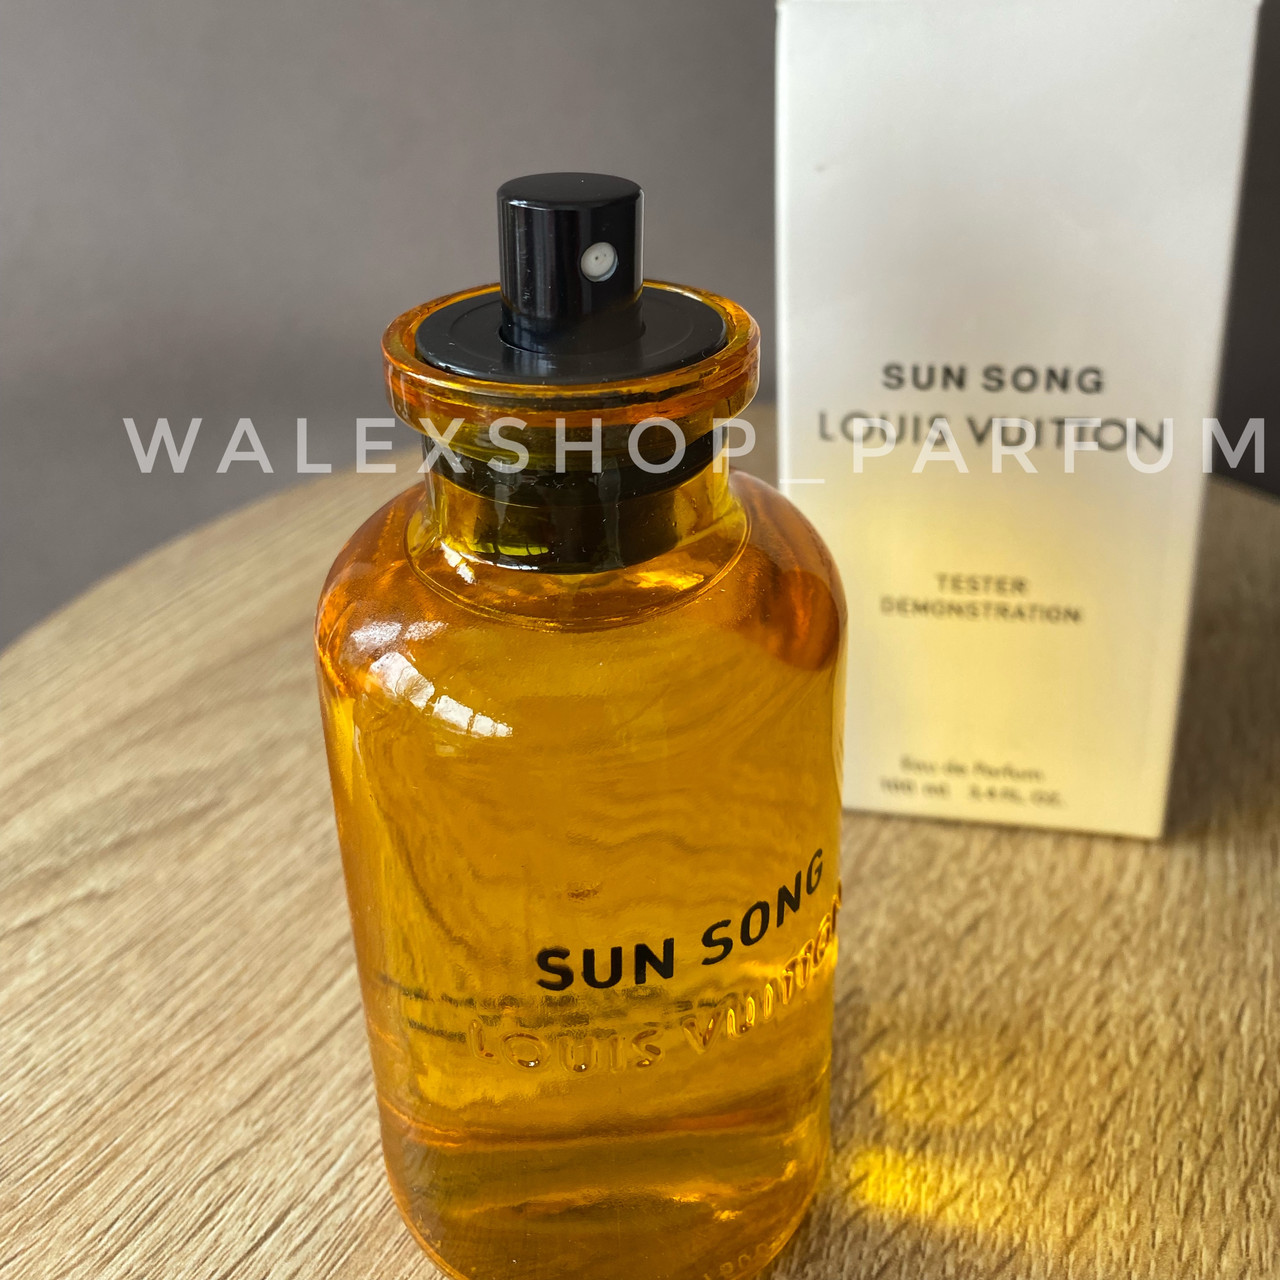 Louis Vuitton Sun Song 3.4 oz 100 ml